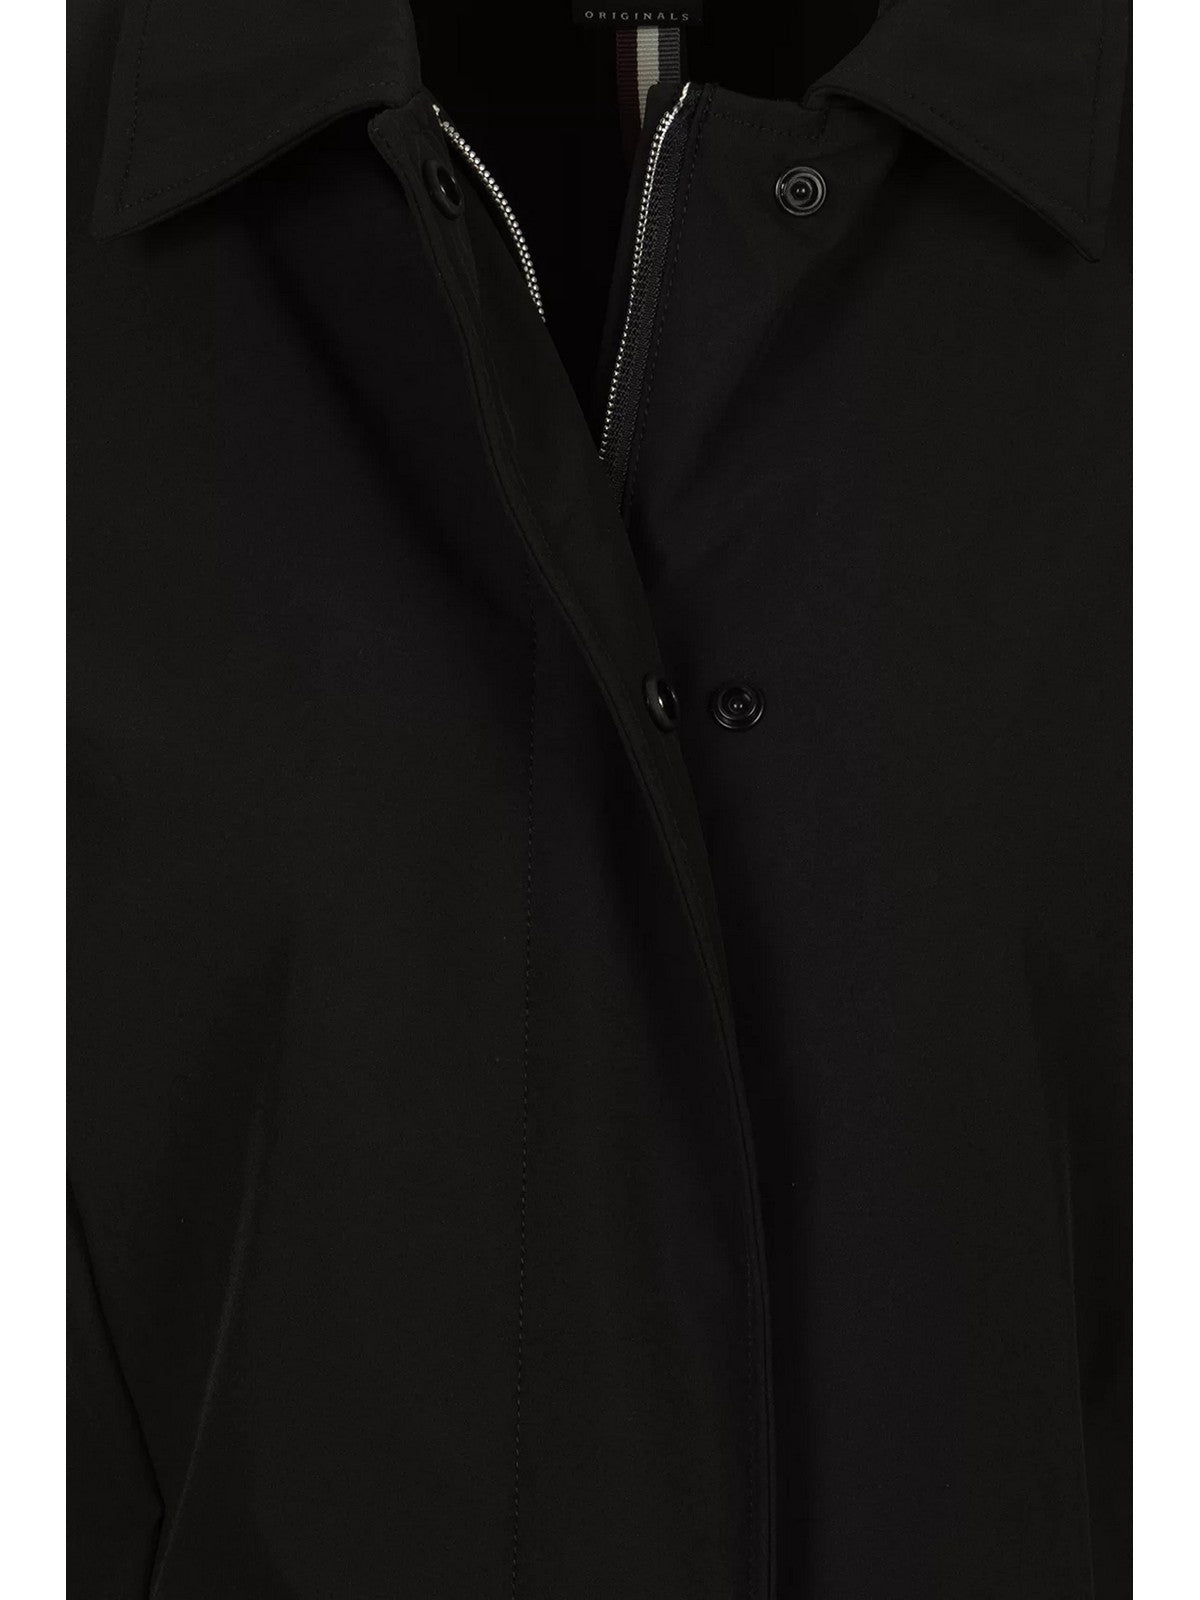 COLMAR Trench-coat pour femmes 1966 6WV 99 Noir